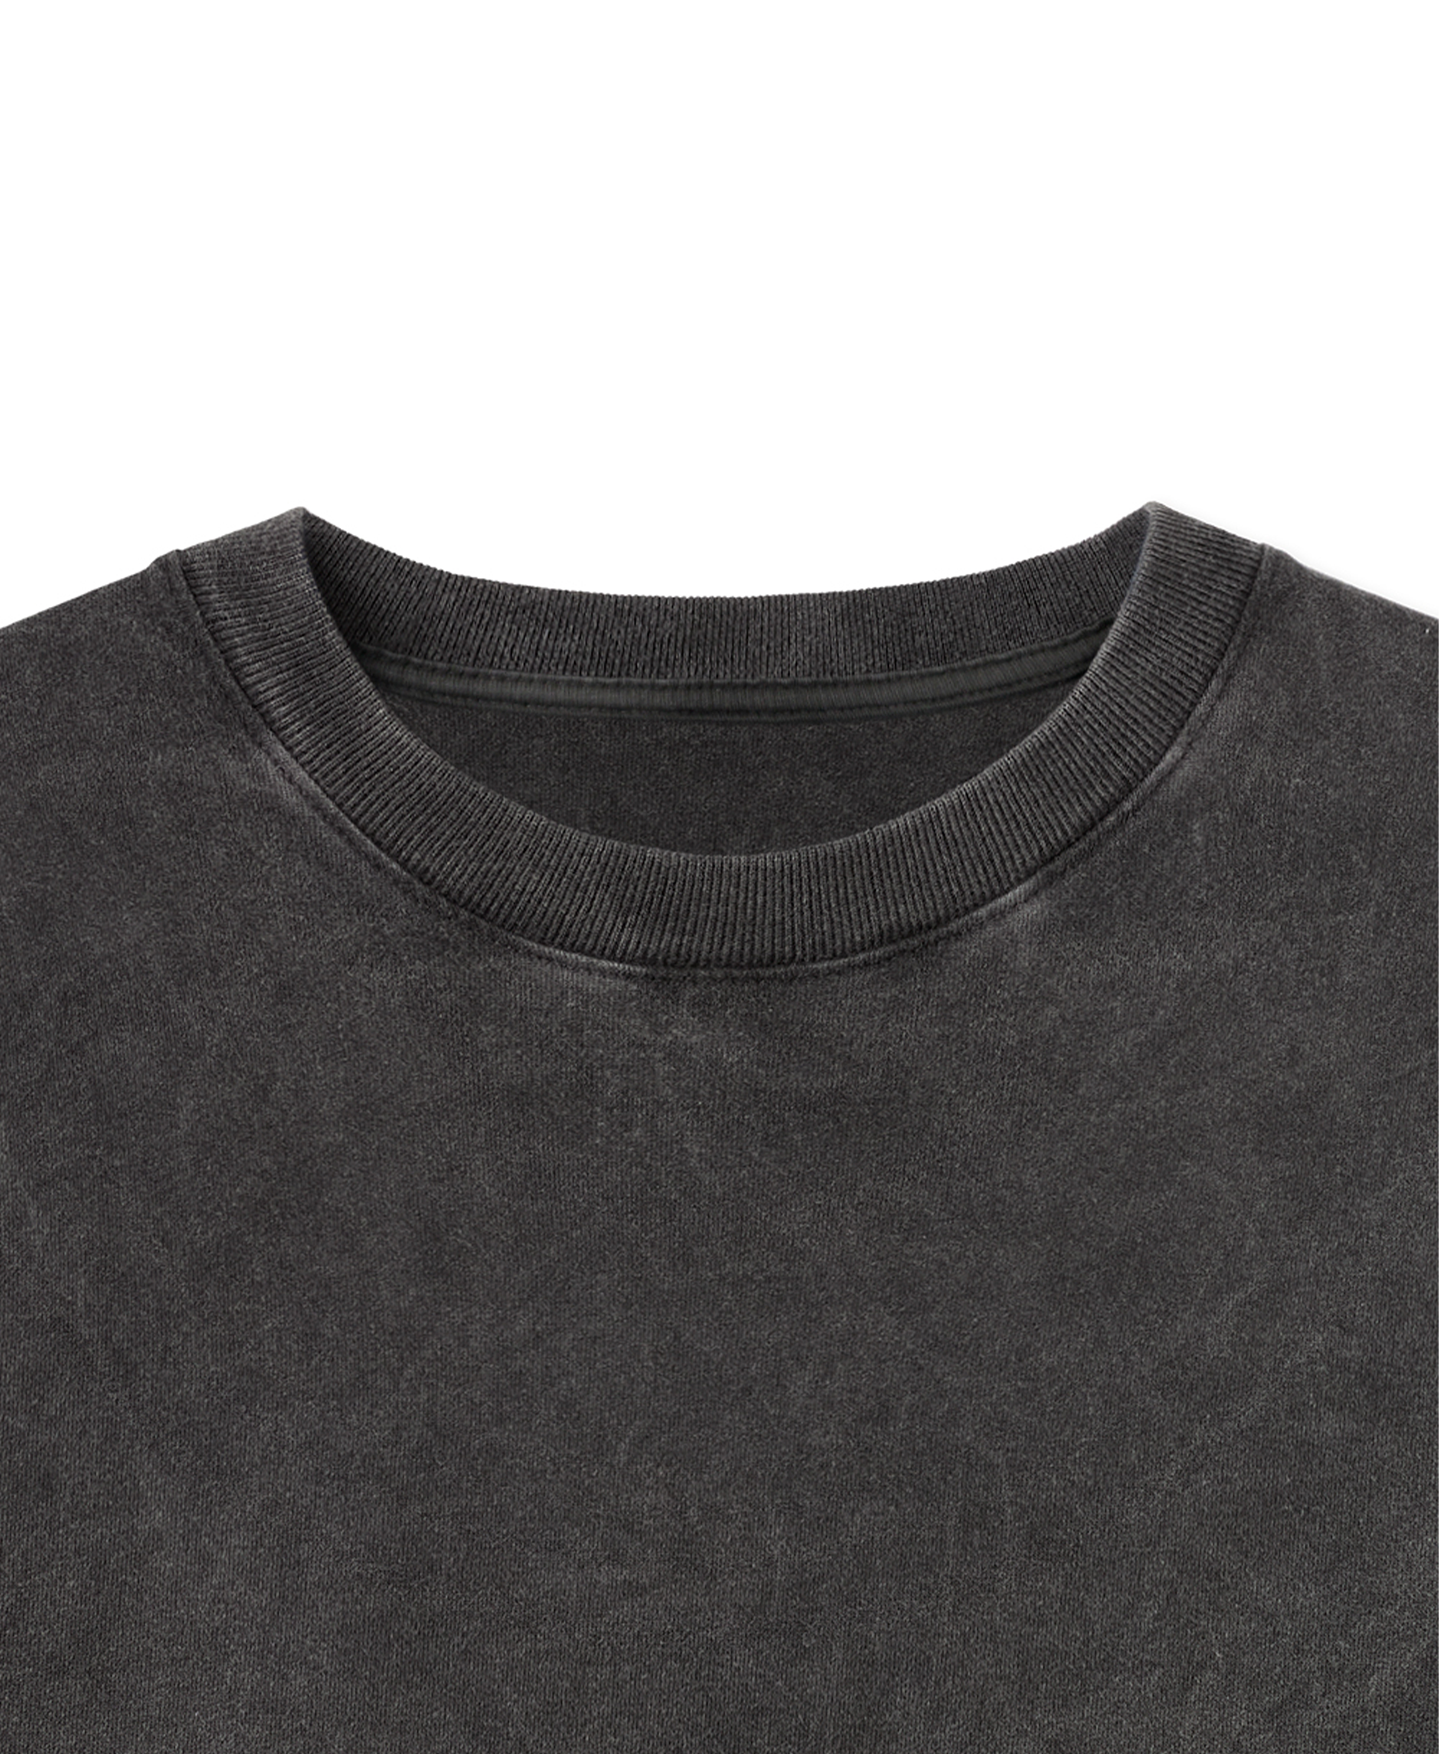 300 GSM 'Vintage Black' T-Shirt